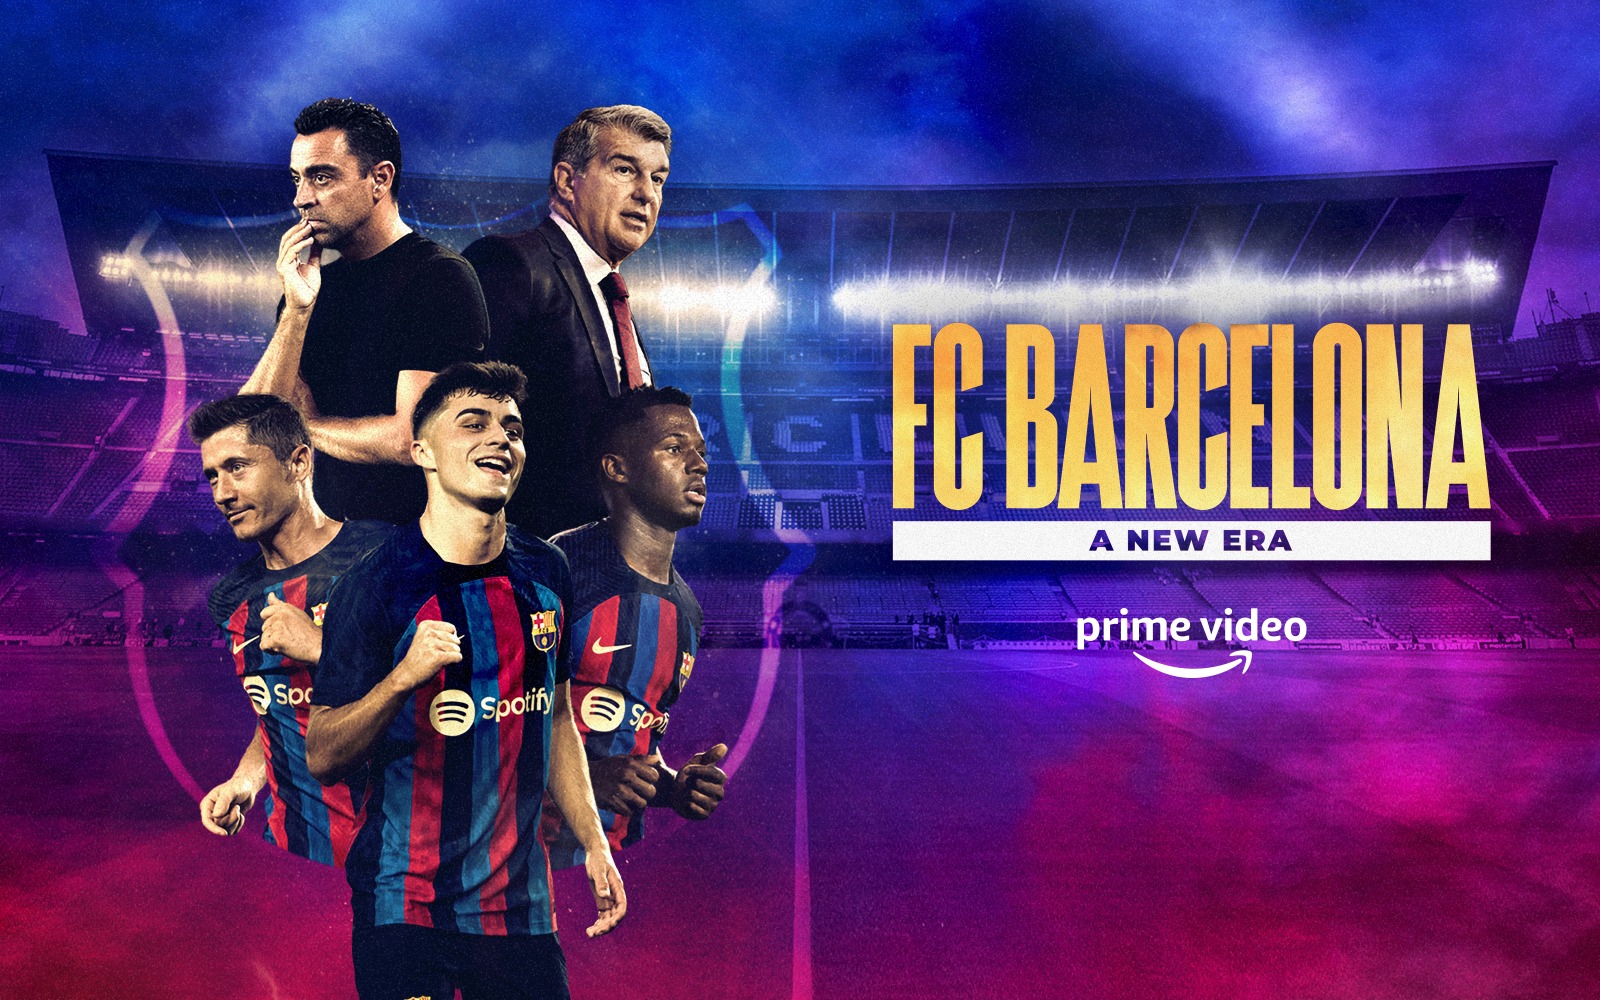 FC Barcelona - Một kỷ nguyên mới (phần 1)